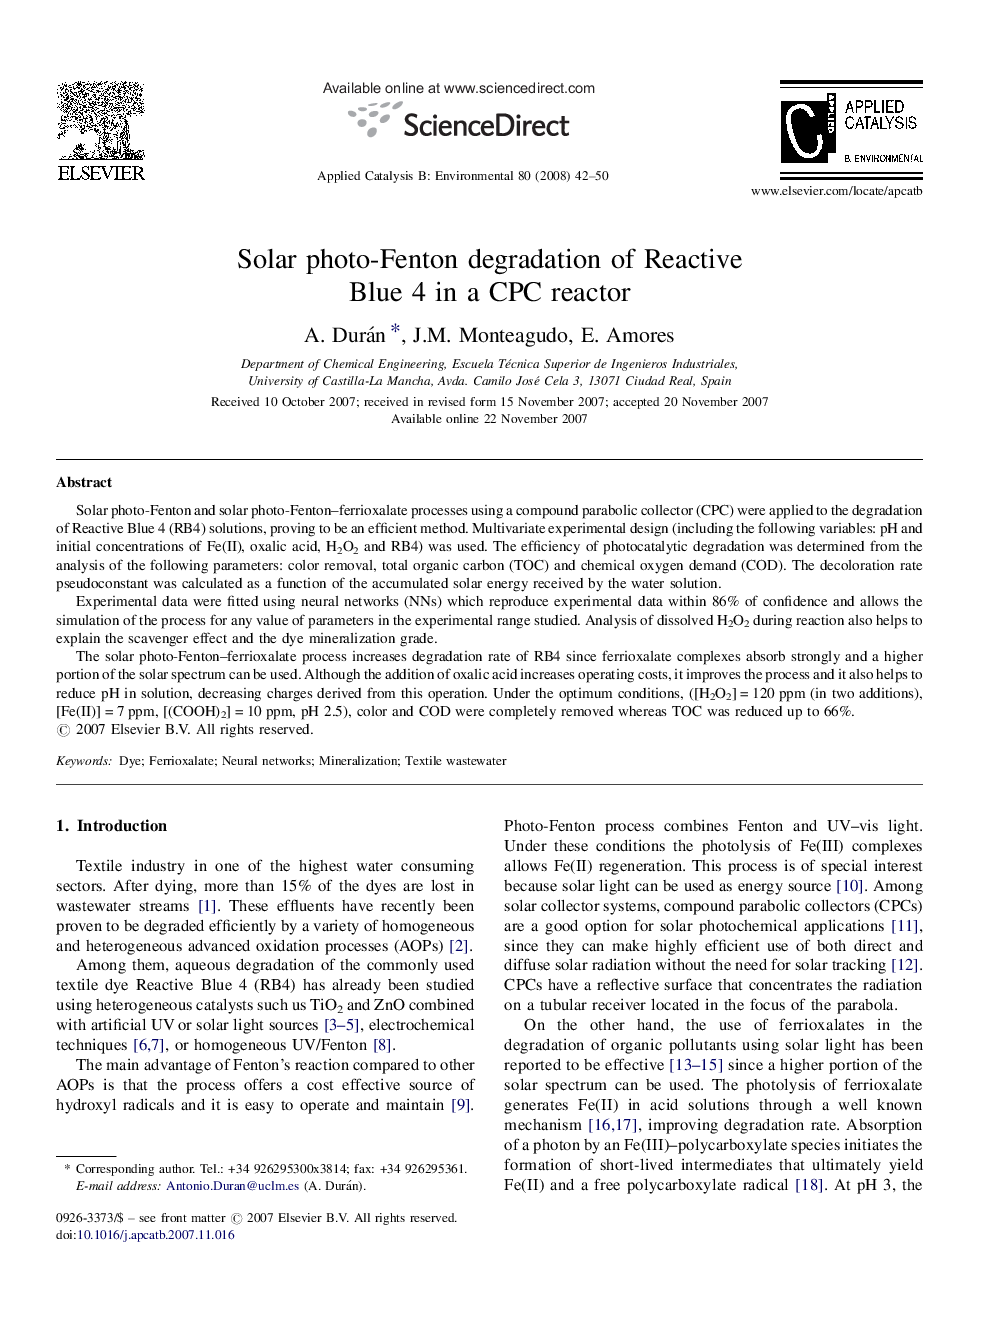 Solar photo-Fenton degradation of Reactive Blue 4 in a CPC reactor